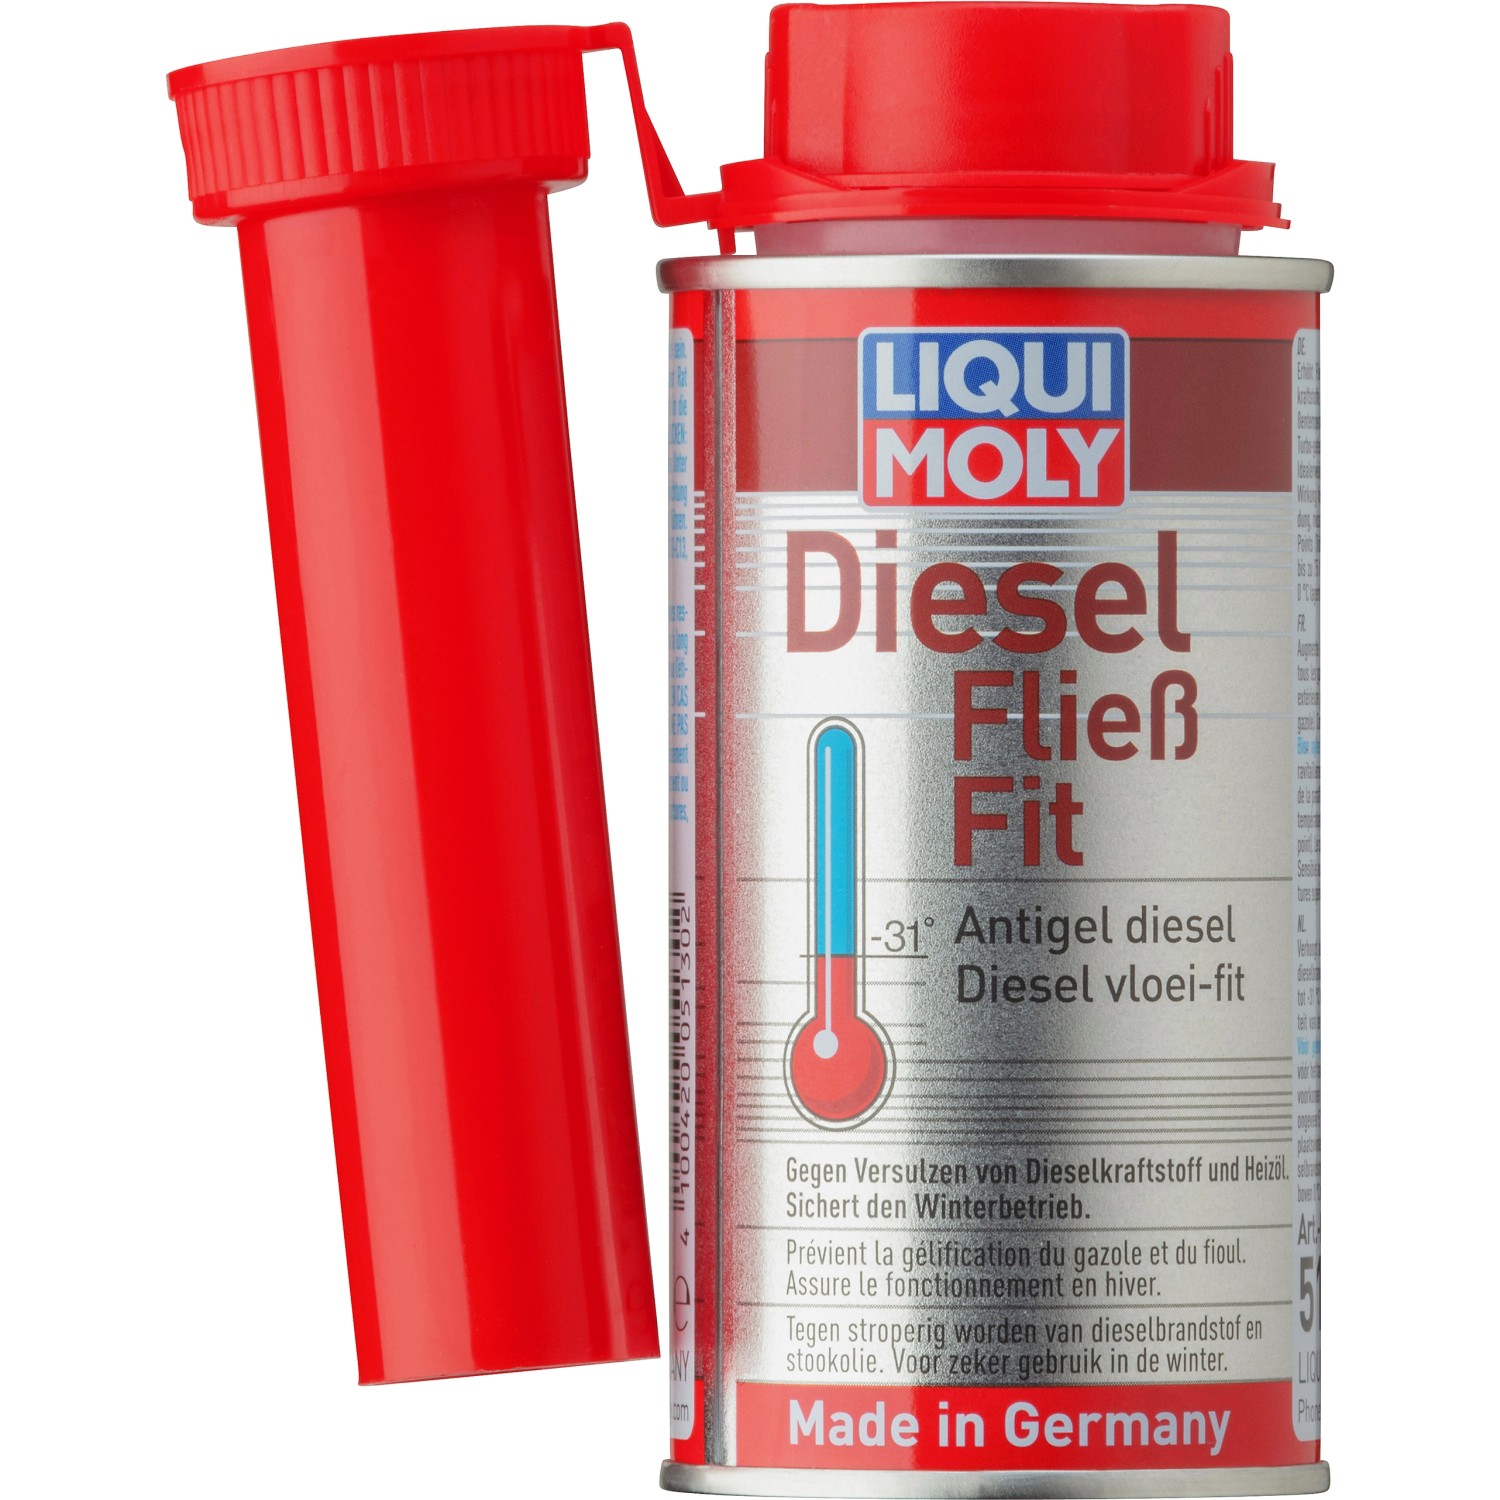 LIQUI MOLY Speed Diesel-Zusatz, 1 L, Dieseladditiv